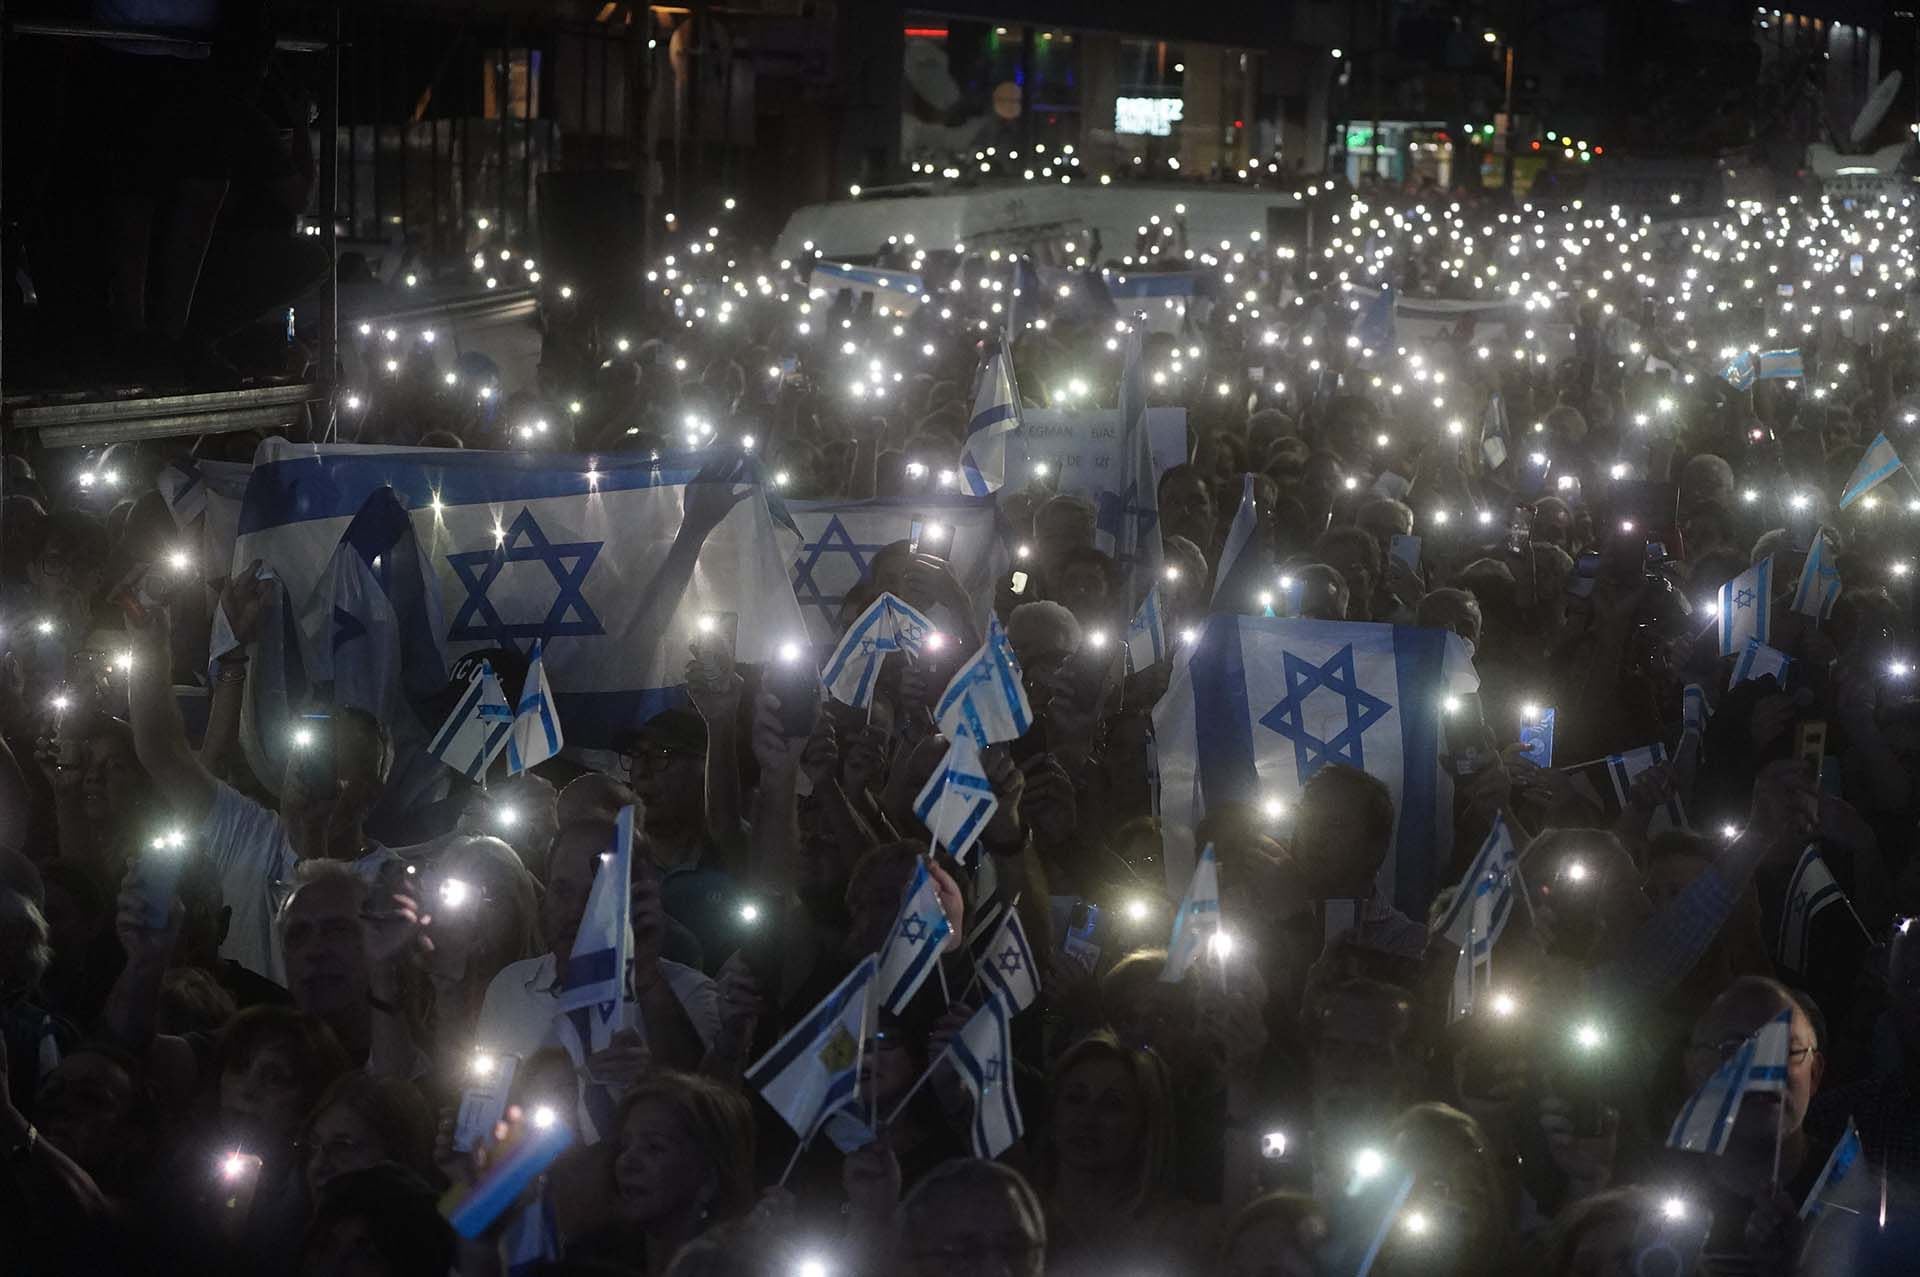 Los celulares iluminando las banderas de Israel en la noche porteña 